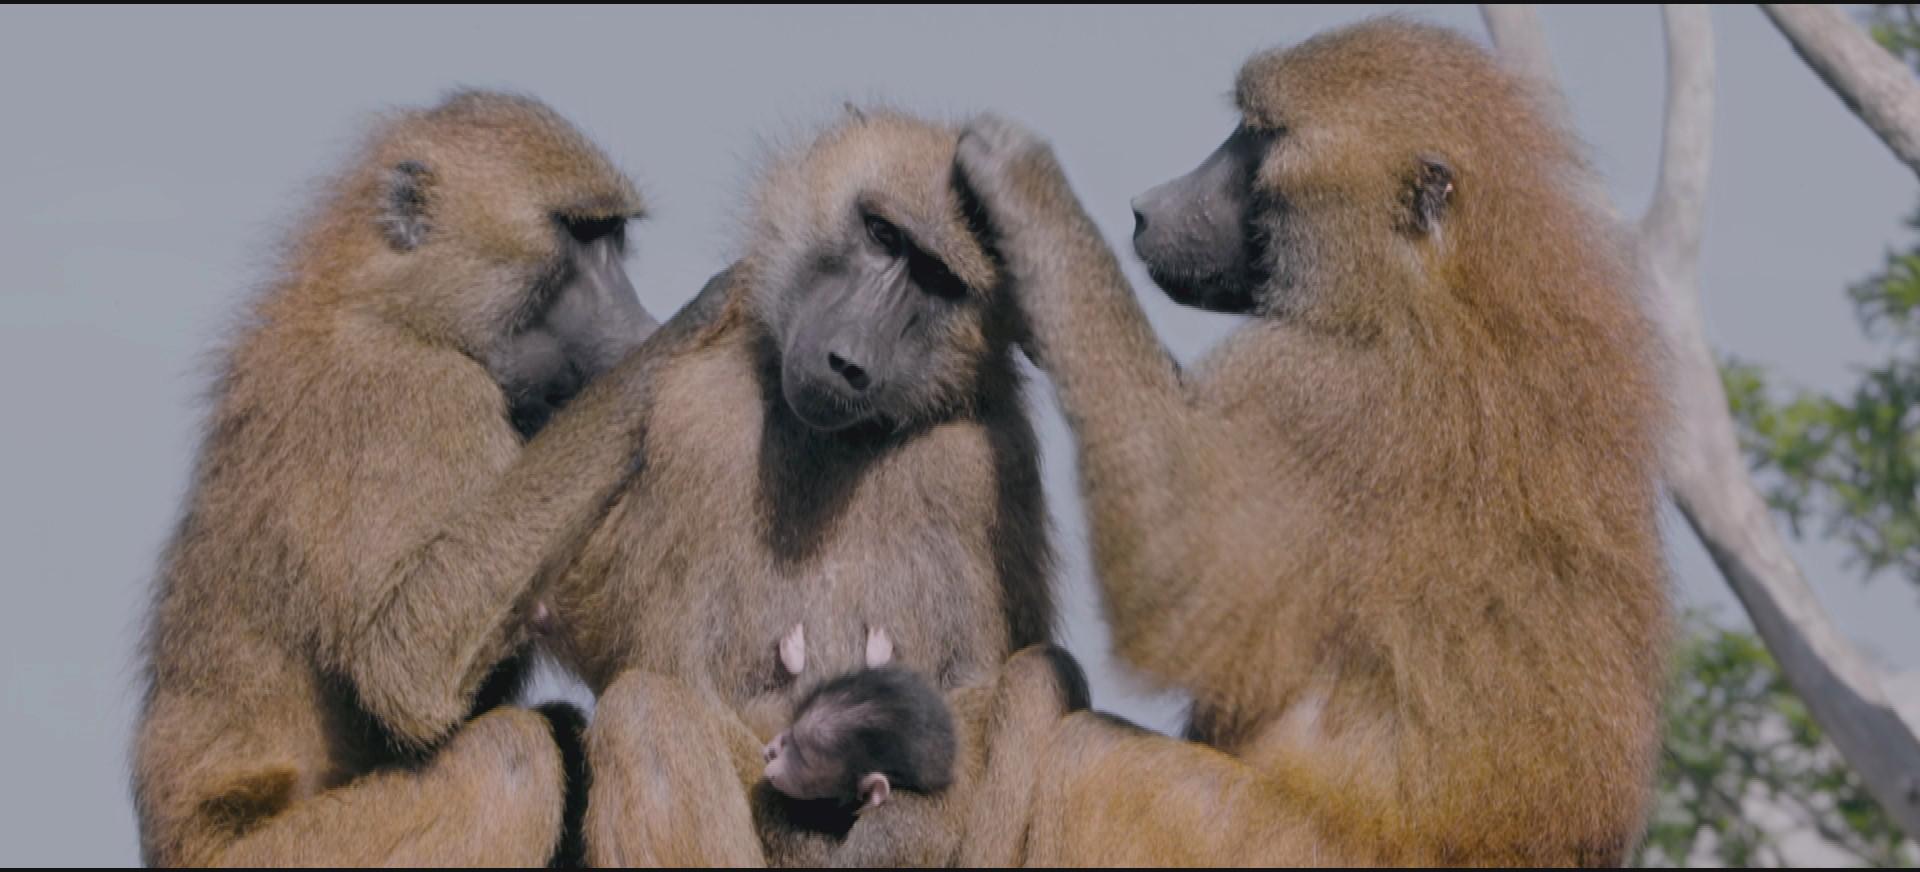 Des babouins en train de s'épouiller, photo extraite d'Un amour de zoo